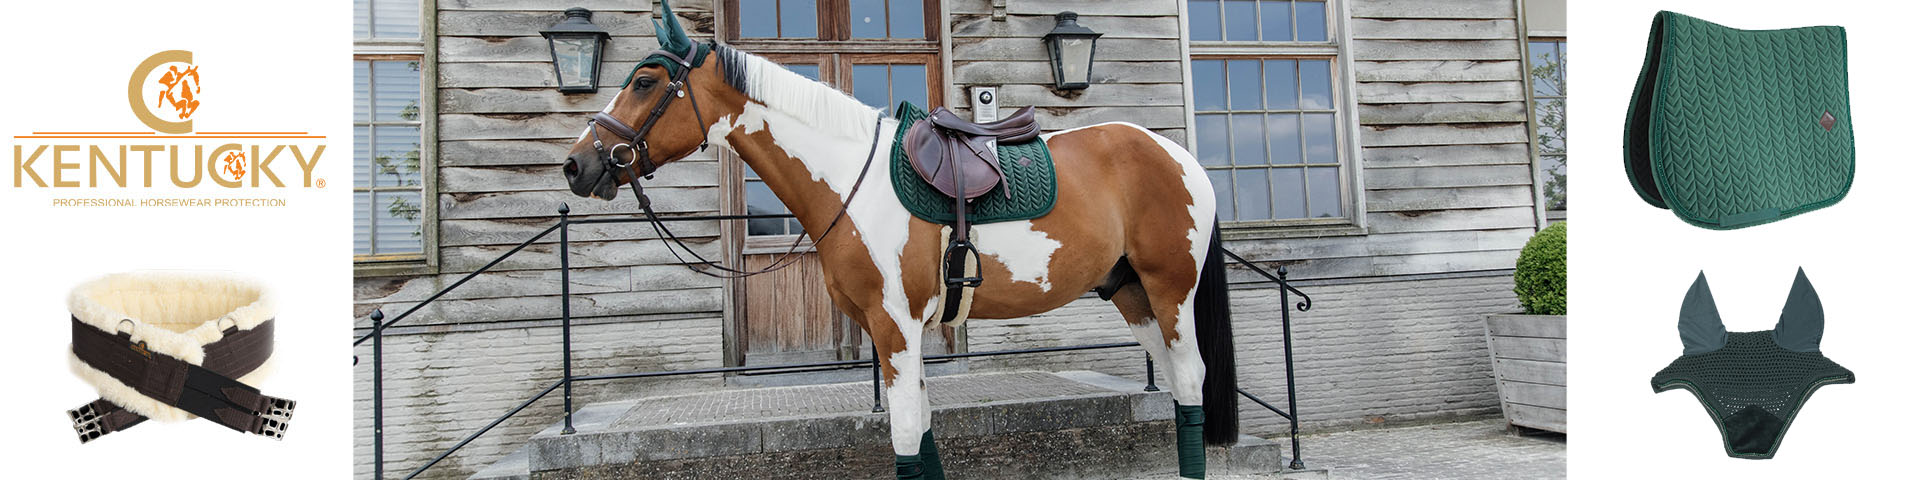 Matériel d'Équitation, Équipement Cheval & Cavalier - Boutique Equitation